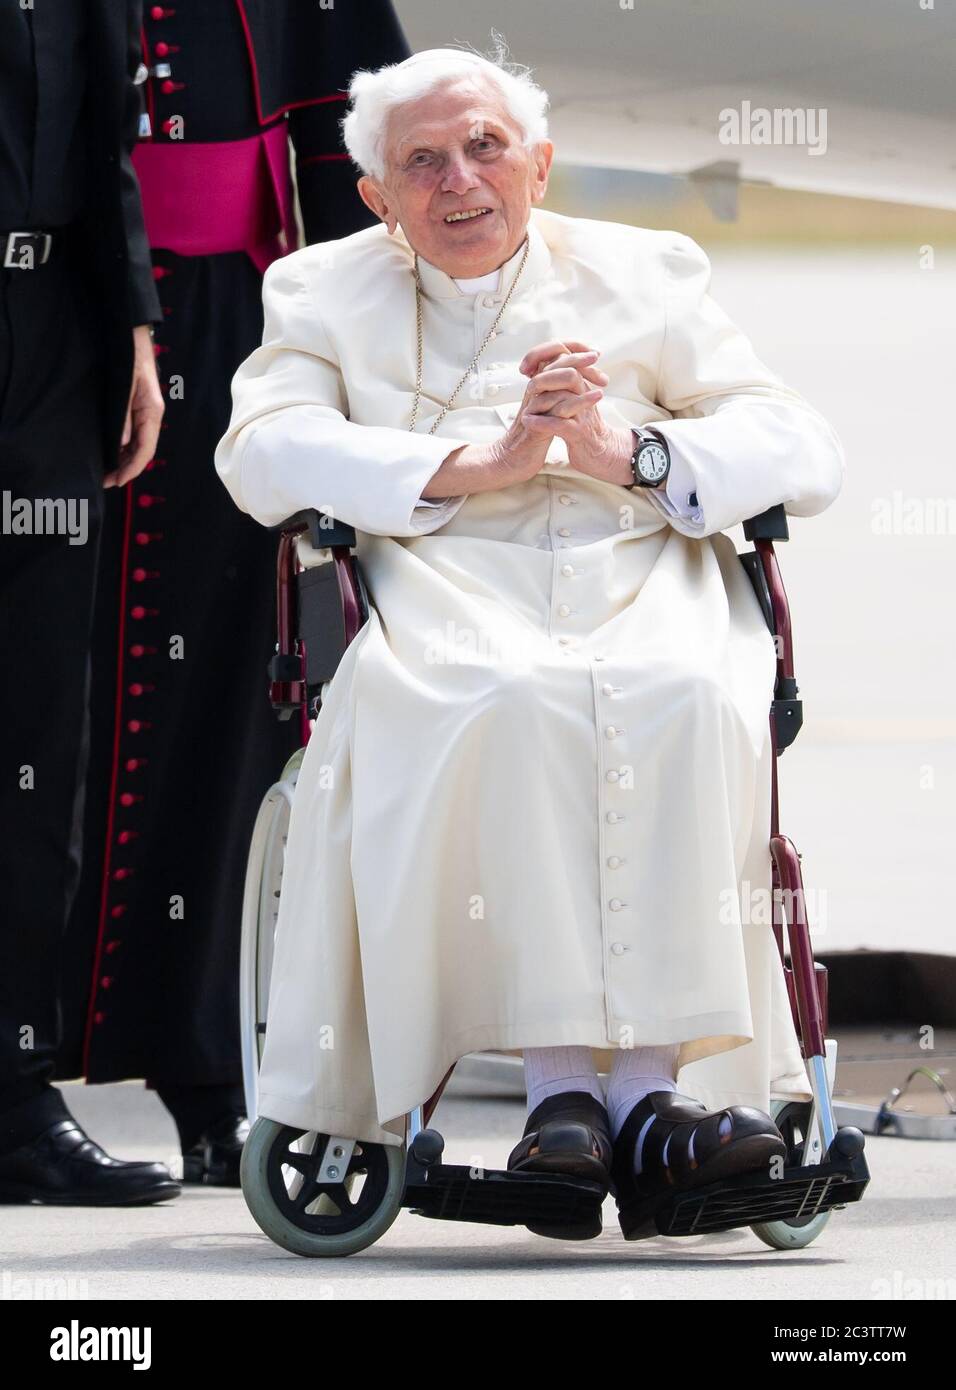 Le Pape émérite Benoît XVI de retour au Vatican, le 22 juin 2020 (Vidéo - 1 min)  Freising-allemagne-22-juin-2020-le-pape-benoit-xvi-arrive-a-l-aeroport-de-munich-pour-embarquer-dans-son-avion-le-pape-emerite-retourne-au-vatican-apres-sa-visite-de-quatre-jours-a-ratisbonne-l-ancien-pape-s-etait-subitement-rendu-chez-lui-le-18-06-2020-pour-rendre-visite-a-son-frere-de-96-ans-credit-sven-hoppe-dpa-pool-dpa-alay-live-news-2c3tt7w